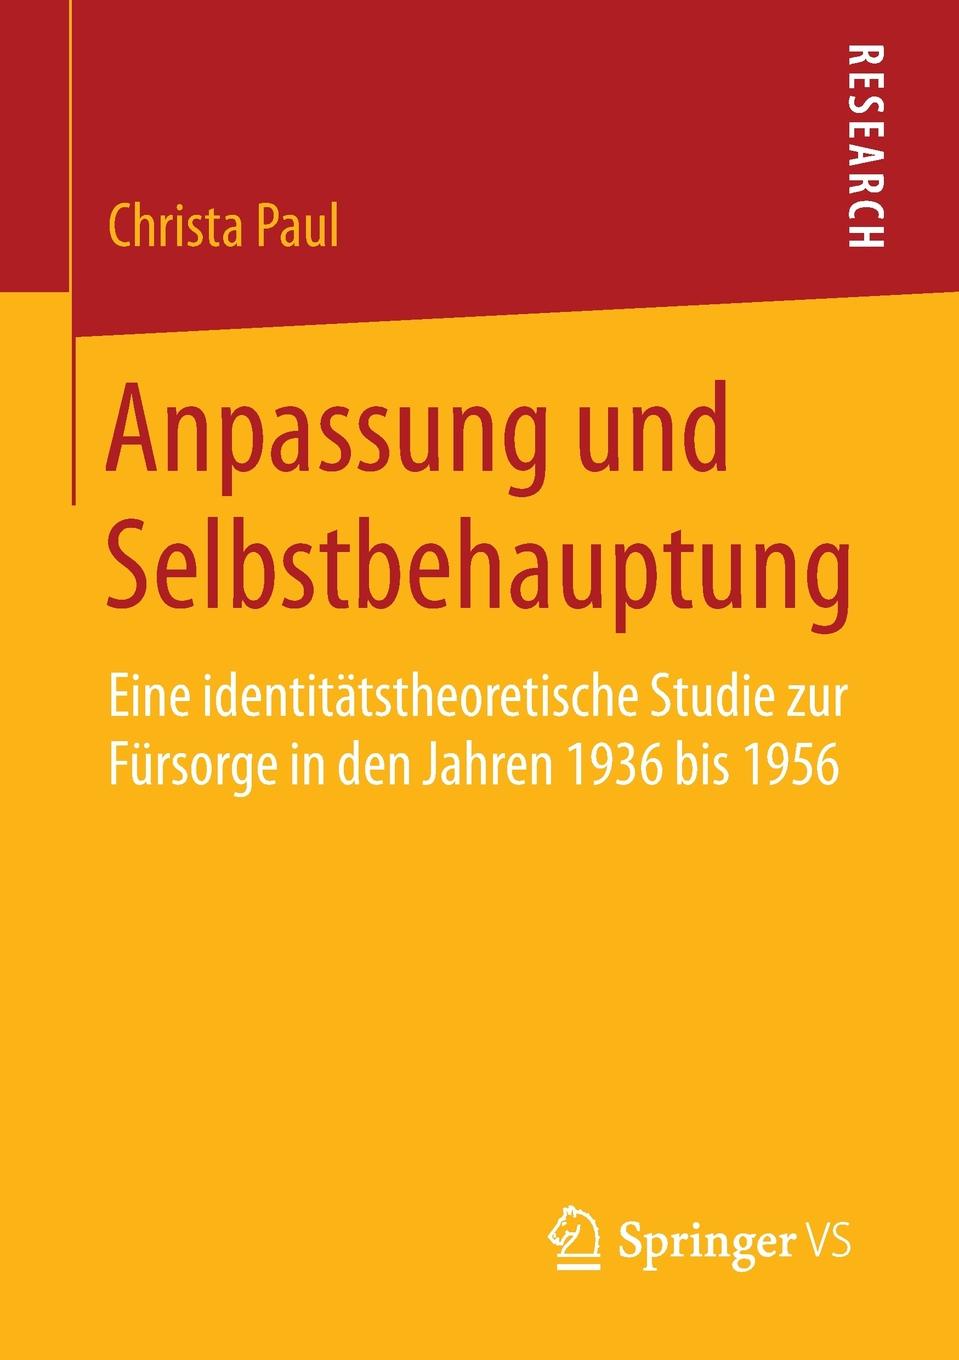 Anpassung und Selbstbehauptung. Eine identitatstheoretische Studie zur Fursorge in den Jahren 1936 bis 1956